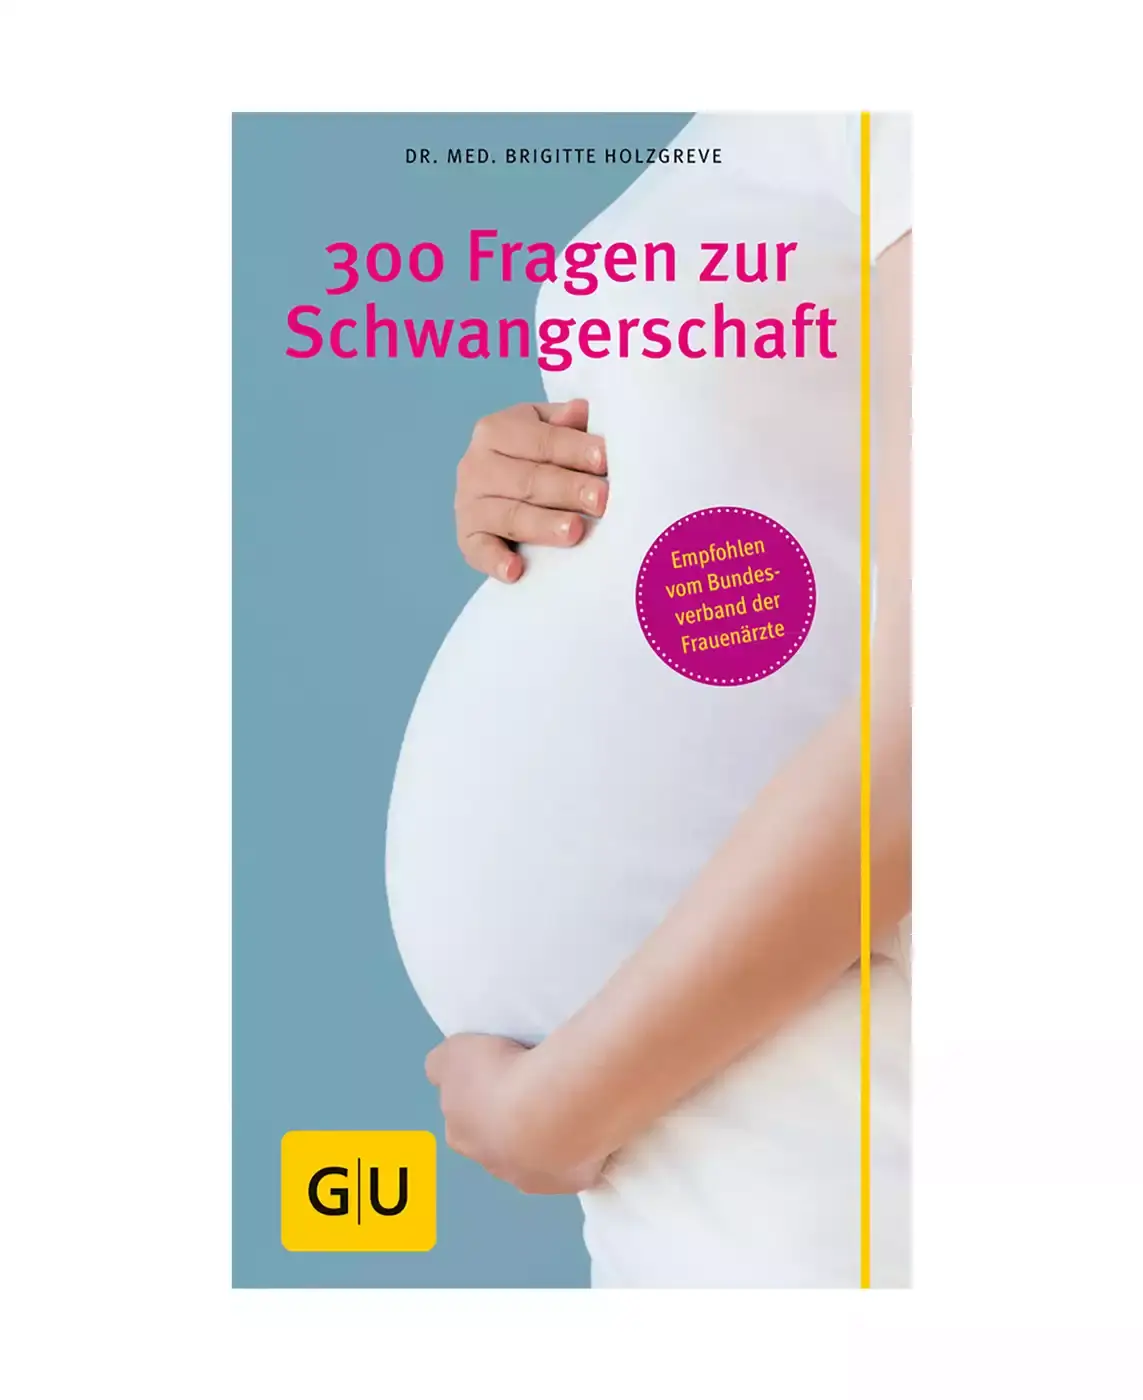 300 Fragen zur Schwangerschaft GU 2000570956507 3